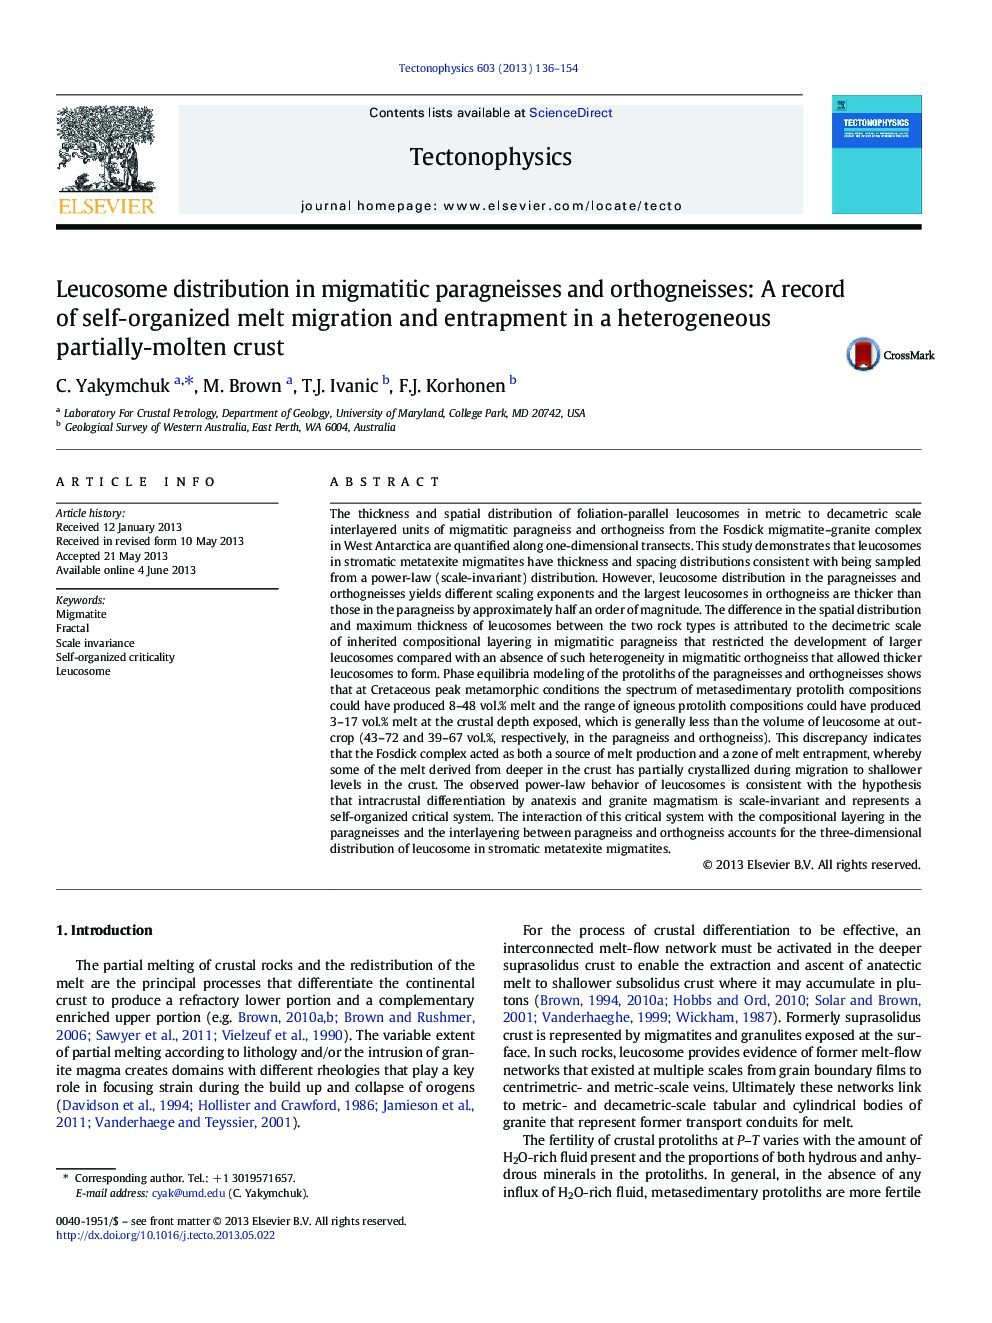 توزیع لوسمی در پاراژنزهای مگماتیتی و اوروگنایس: سابقه ای از مهاجرت و مشتق شدن ذوب خود در یک پوسته ناهمگن پوسته تقریبا مذاب 